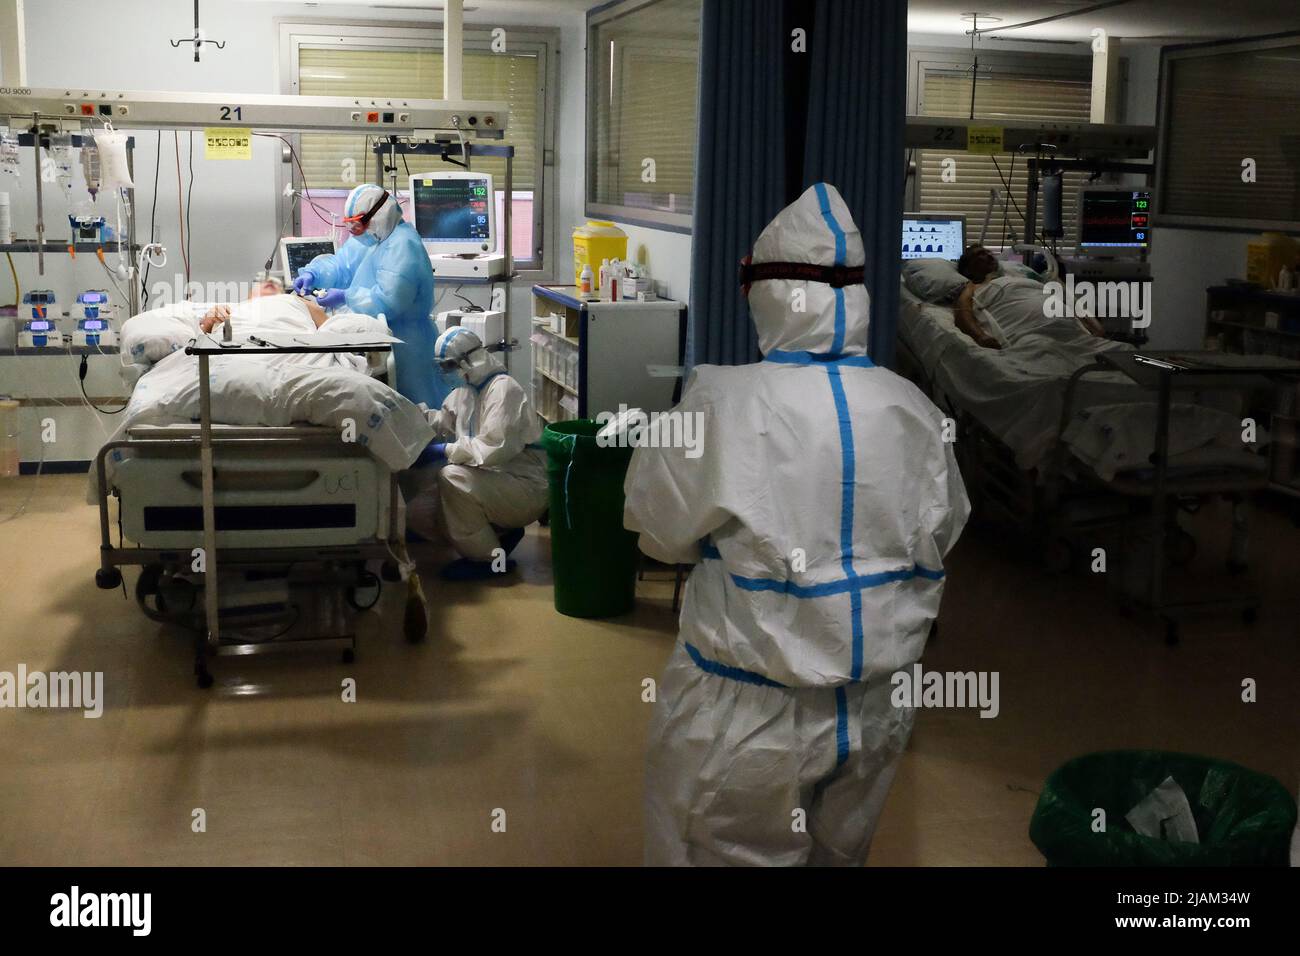 L'unità di terapia intensiva dell'ospedale Severo Ochoa di Madrid, Spagna, con alcuni pazienti Covid, durante la pandemia covida. Foto Stock